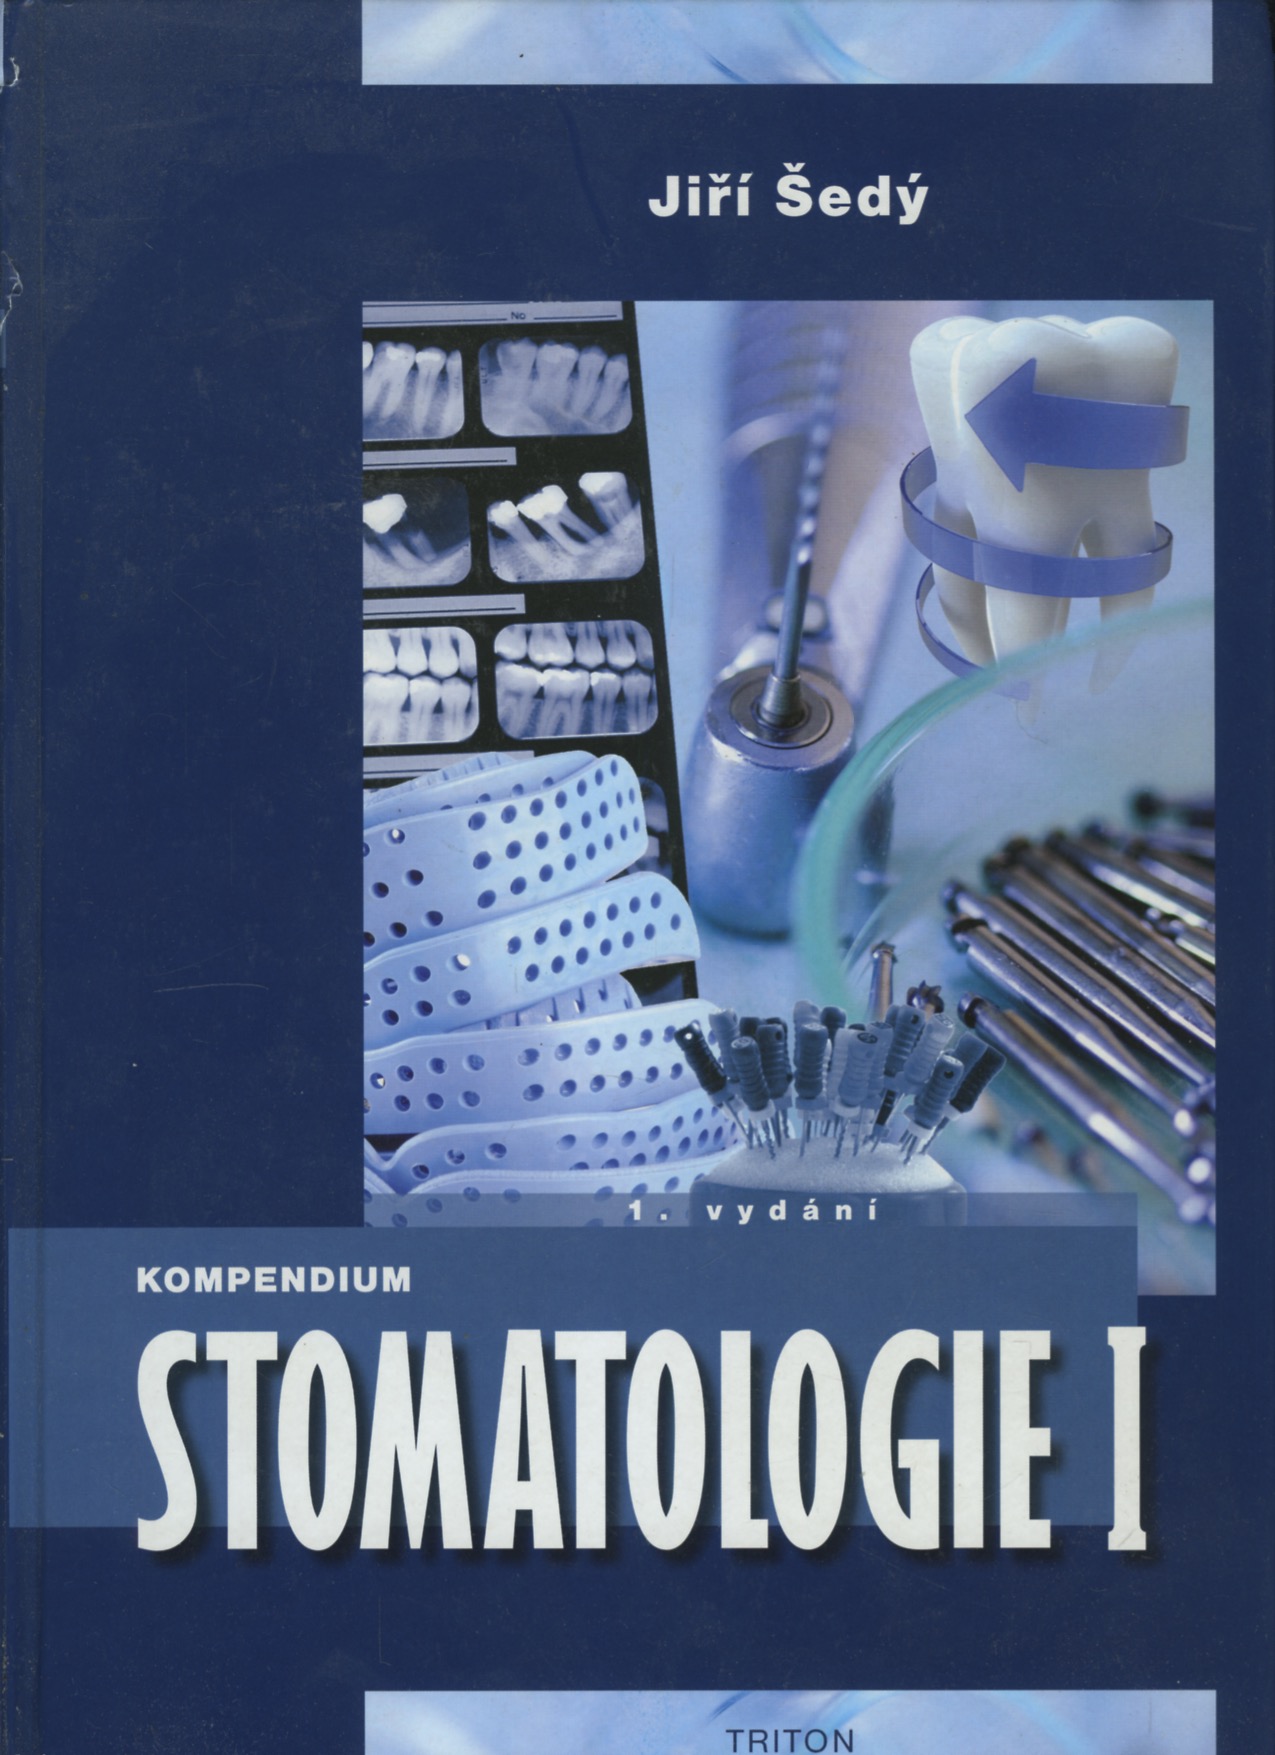 Kompendium Stomatologie I (Jiří Šedý)